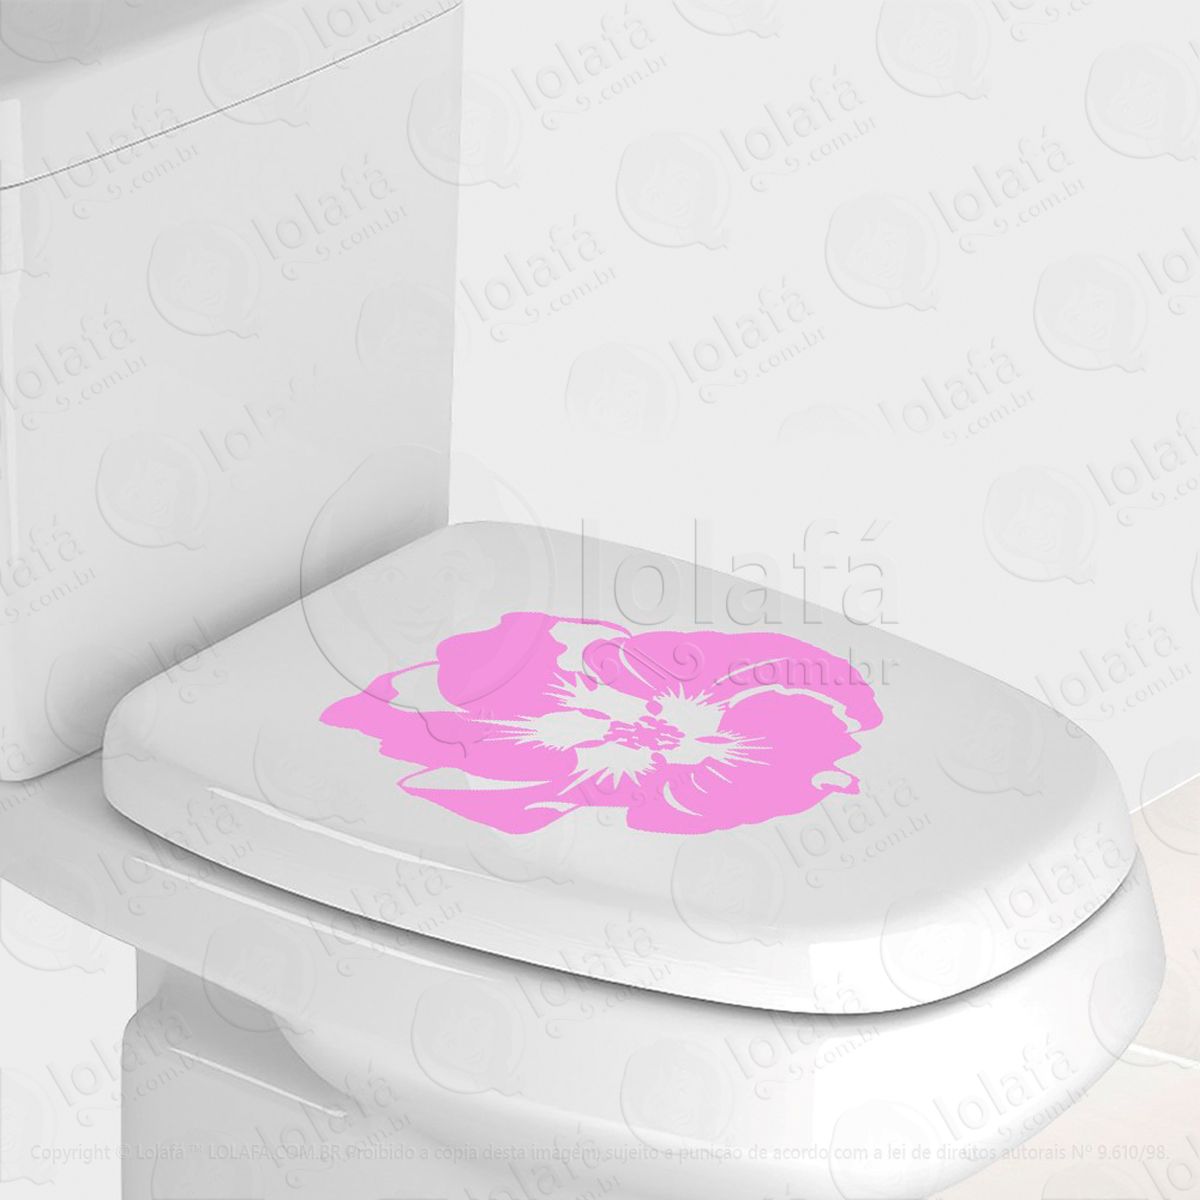 flor adesivo para vaso sanitário e privada - mod:89